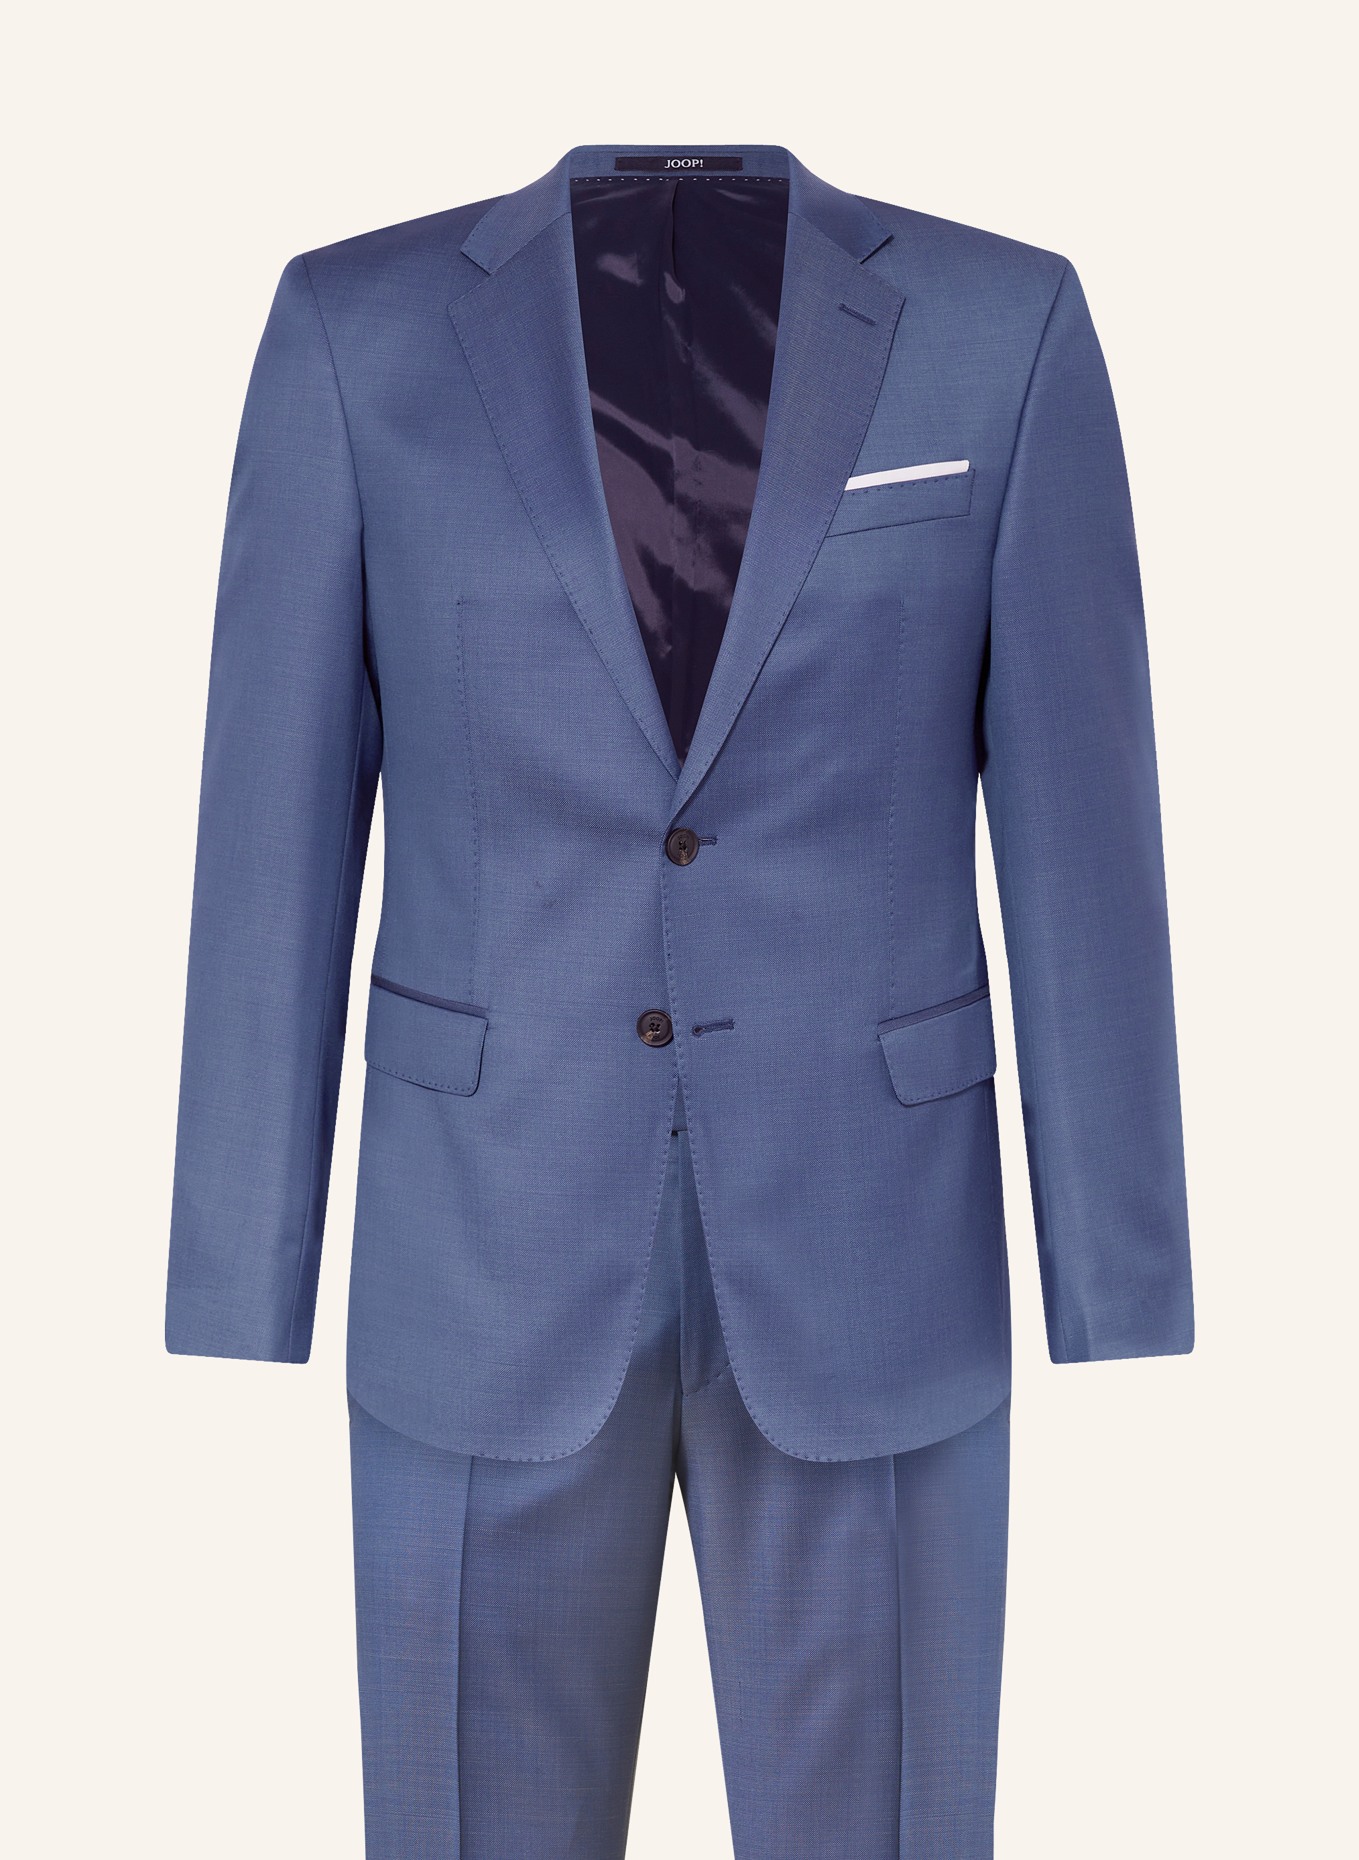 JOOP! Anzug HERBY Slim Fit, Farbe: 410 Navy                       410 (Bild 1)